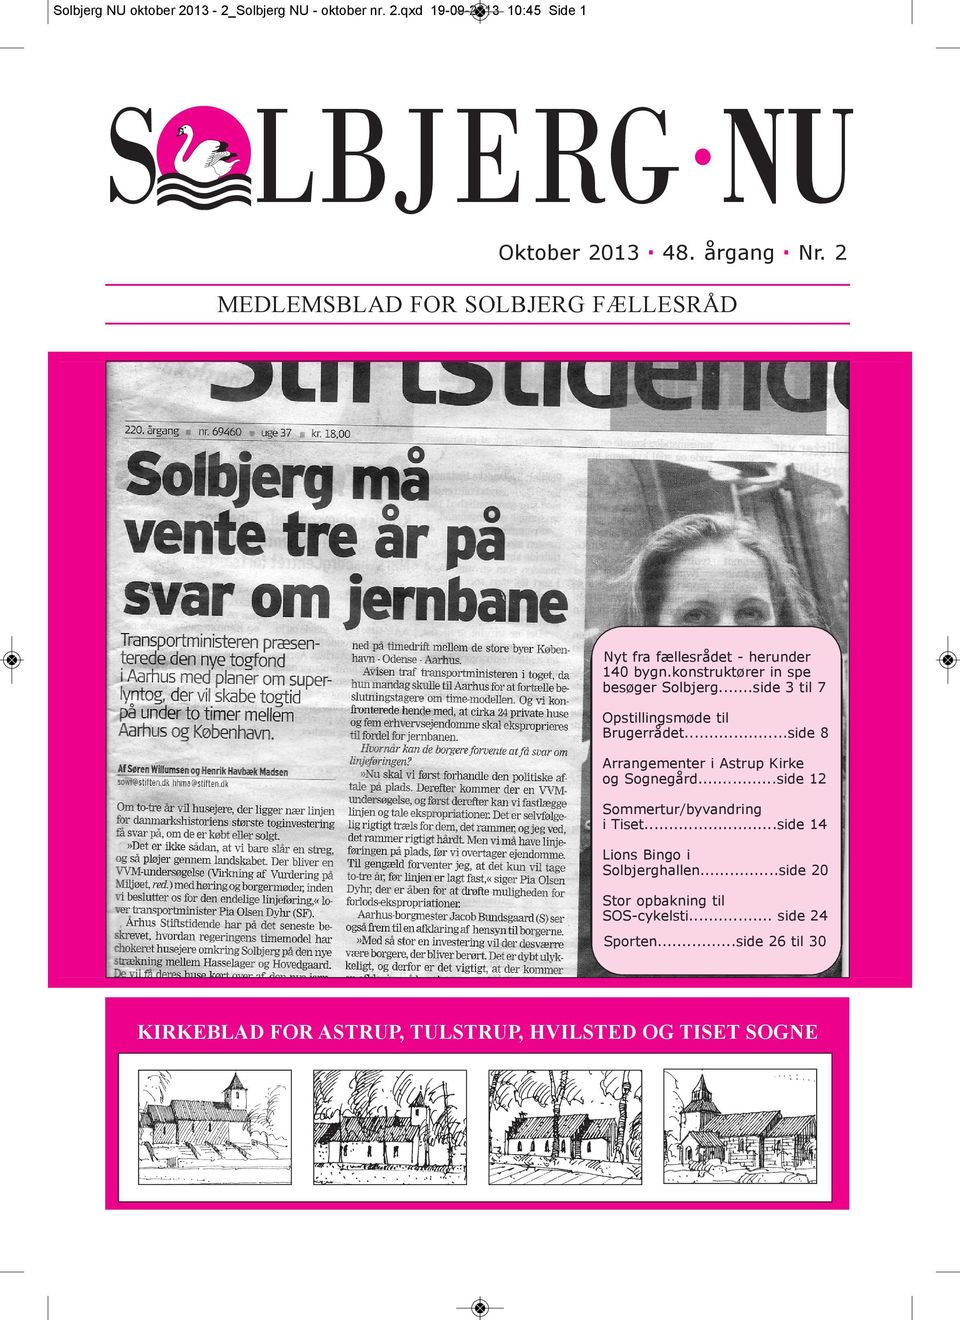 ..side 3 til 7 Opstillingsmøde til Brugerrådet...side 8 Arrangementer i Astrup Kirke og Sognegård...side 12 Sommertur/byvandring i Tiset.